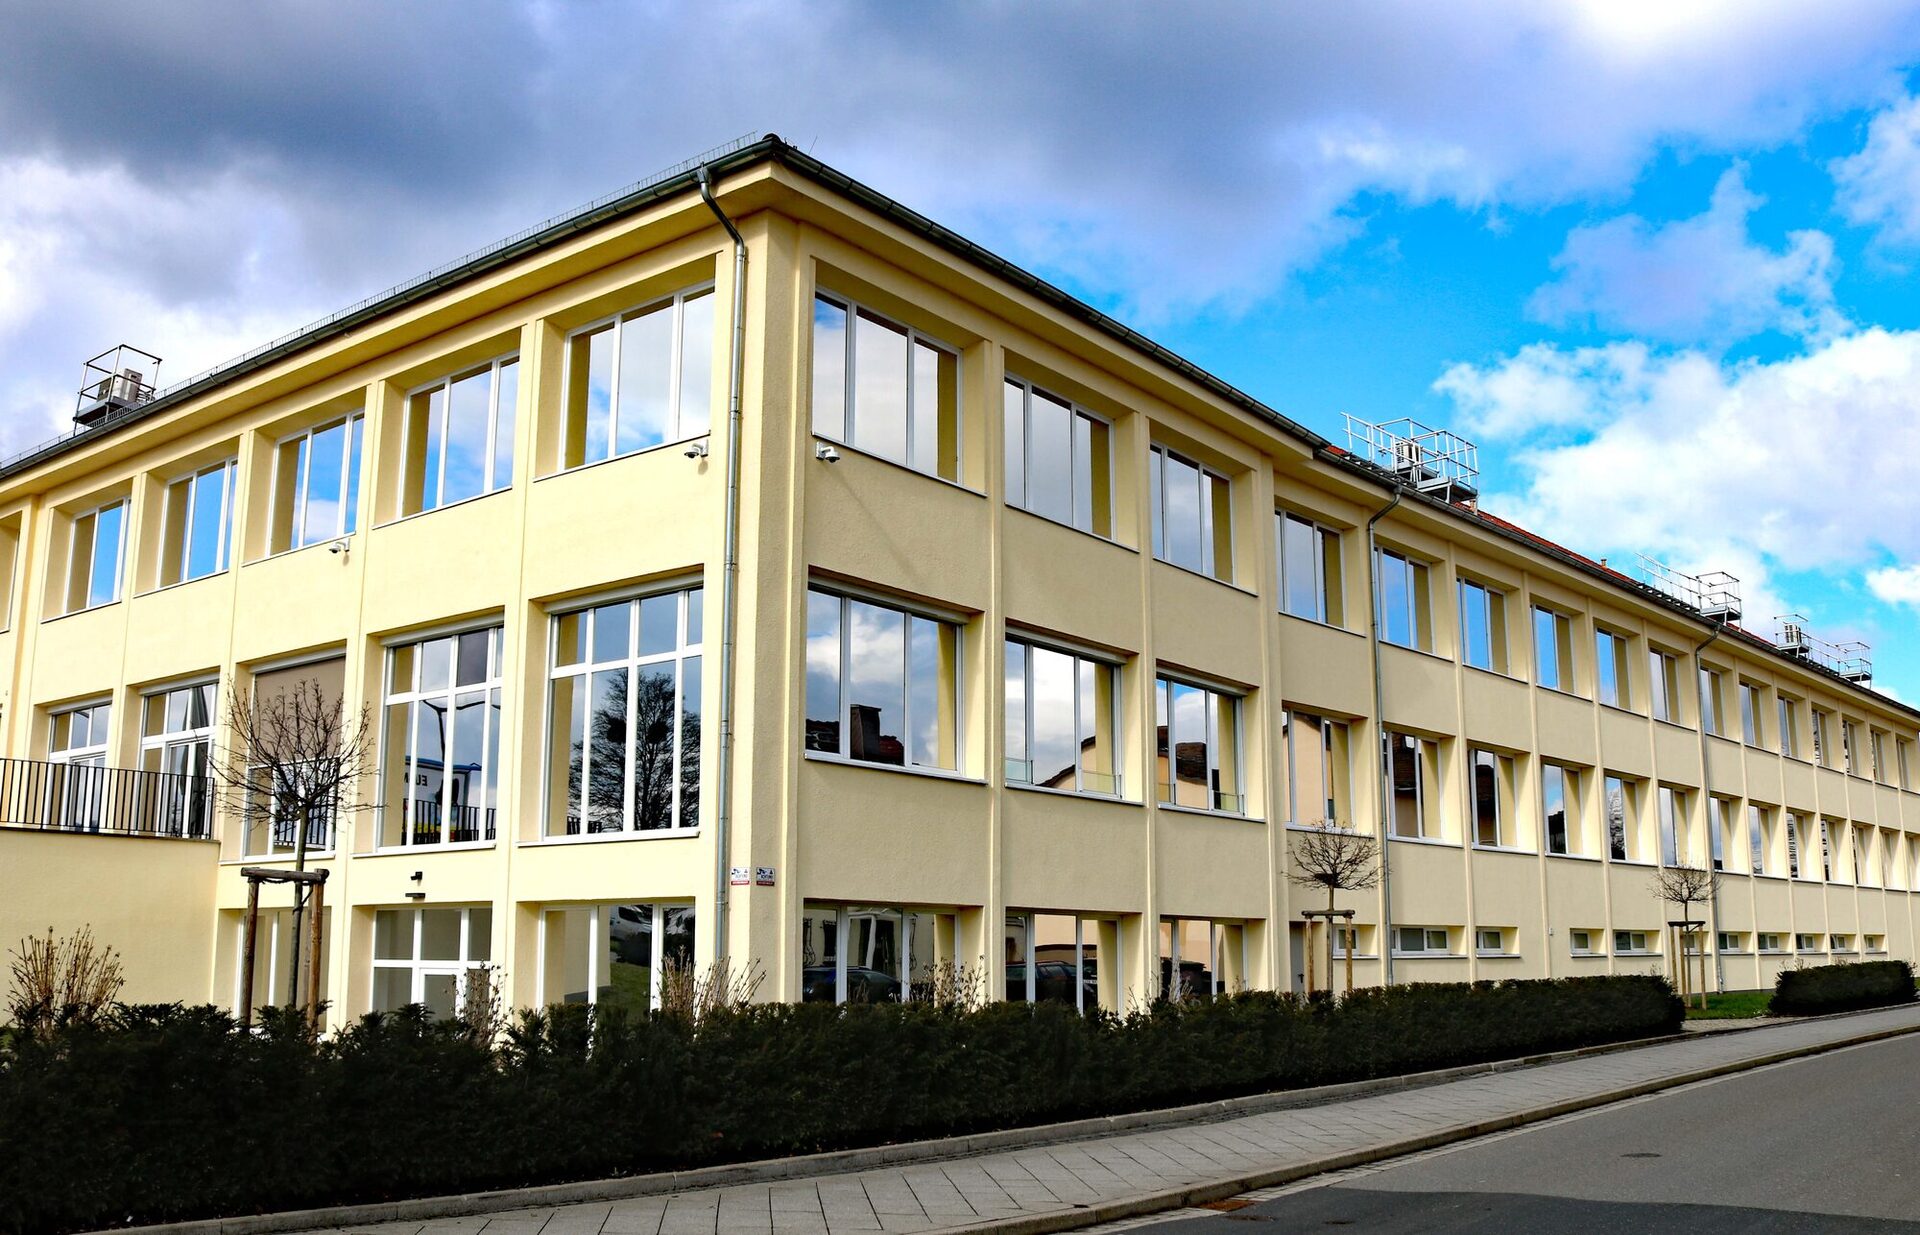 Der Landkreis Kassel zieht mit Teilen der Kreisverwaltung in das bisher von der Evangelischen Bank genutzte Gebäude der ehemaligen Druckerei Schanze in der Kohlenstraße 132 in Kassel.